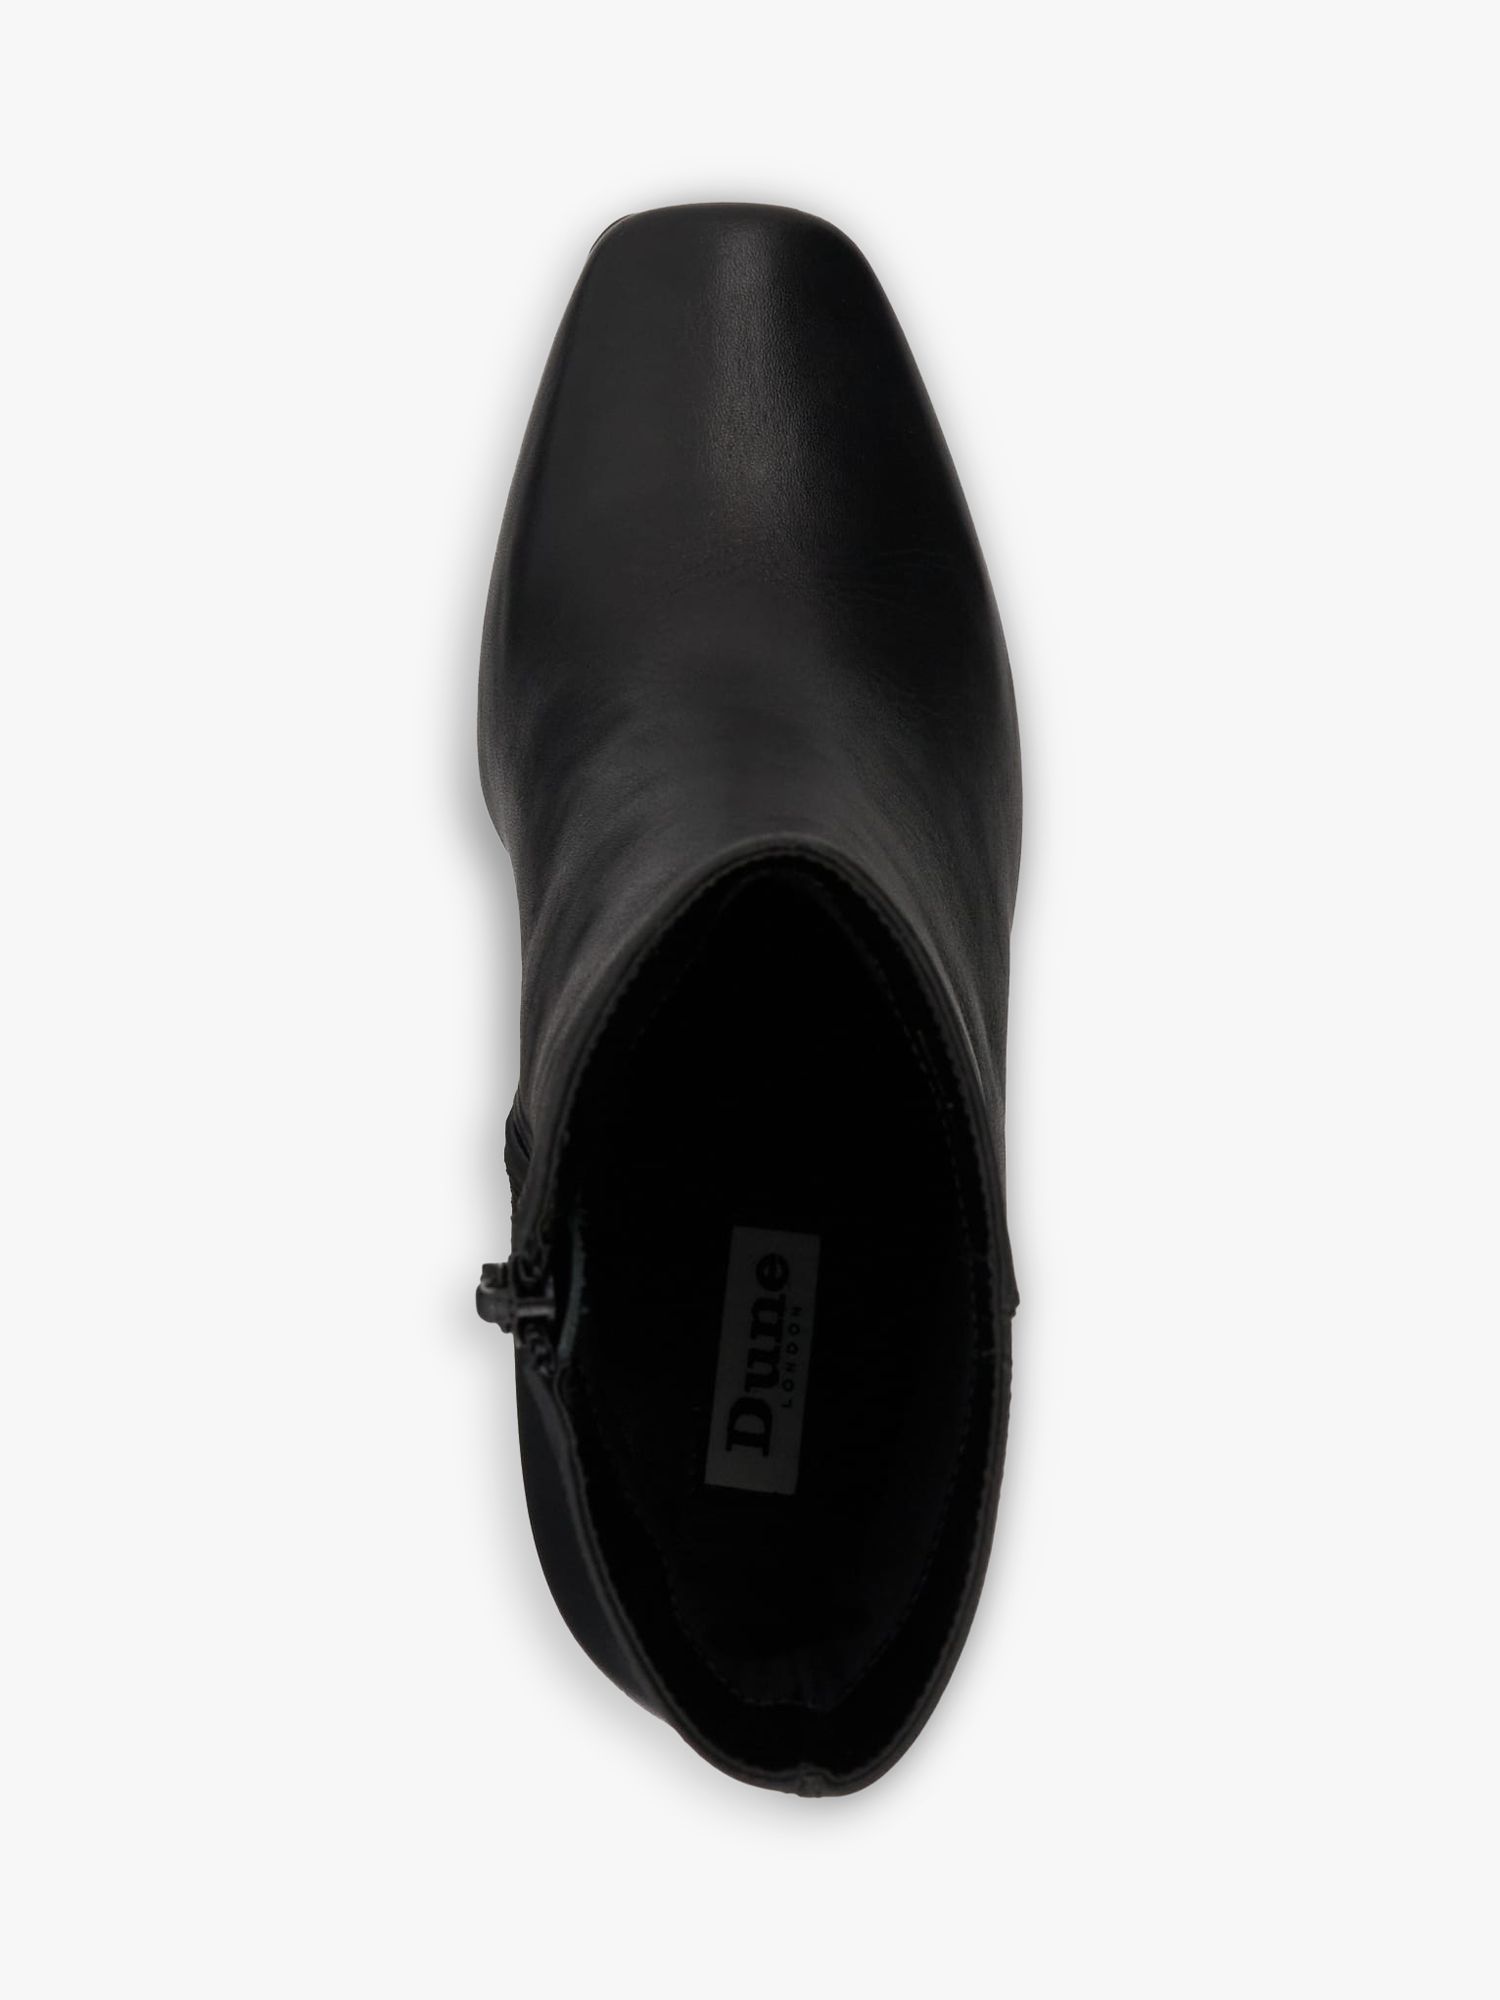 Buy Dune Oxygen Leather Block Heel Boots, Black Online at johnlewis.com